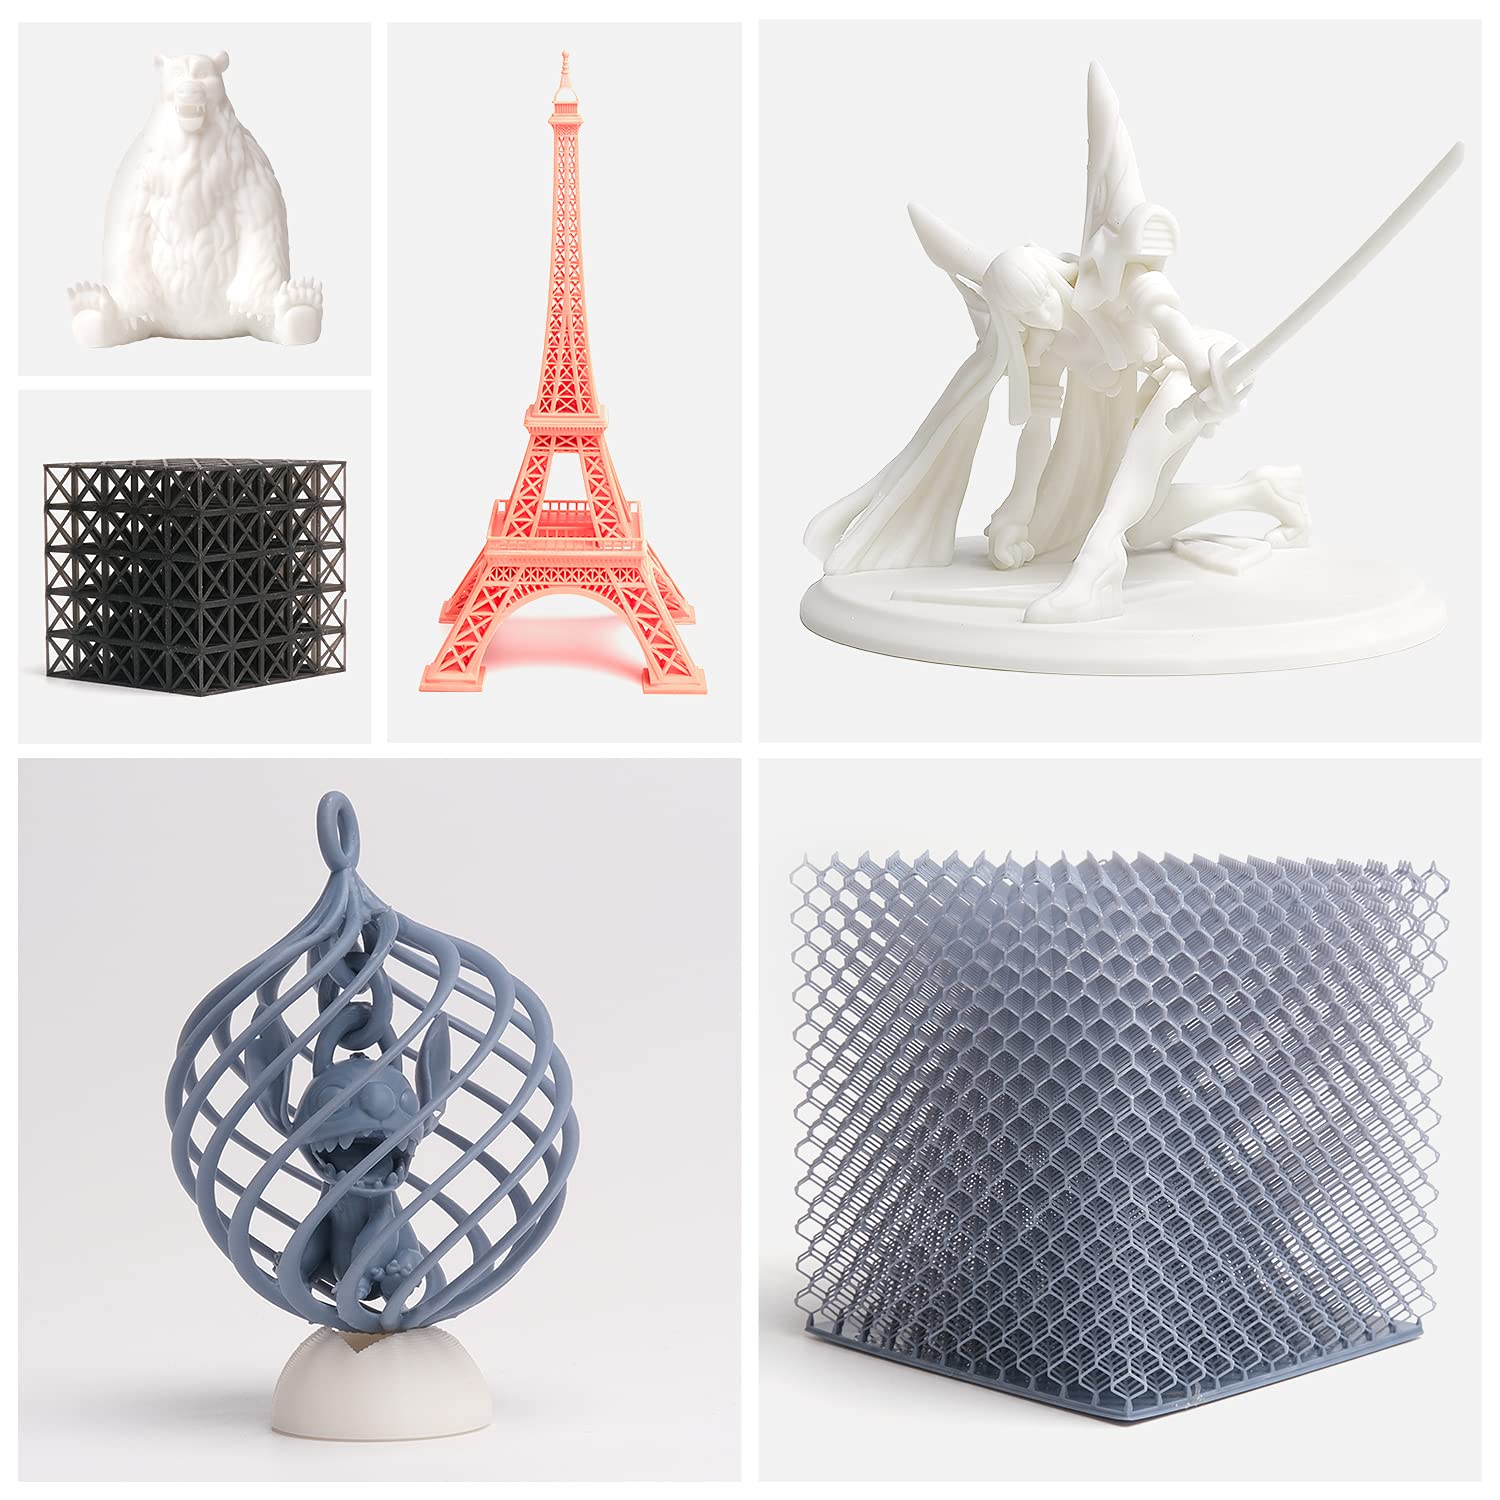 Filament 3D PETG Noir 1.75mm 1kg – 3dware, Impression 3D au Maroc